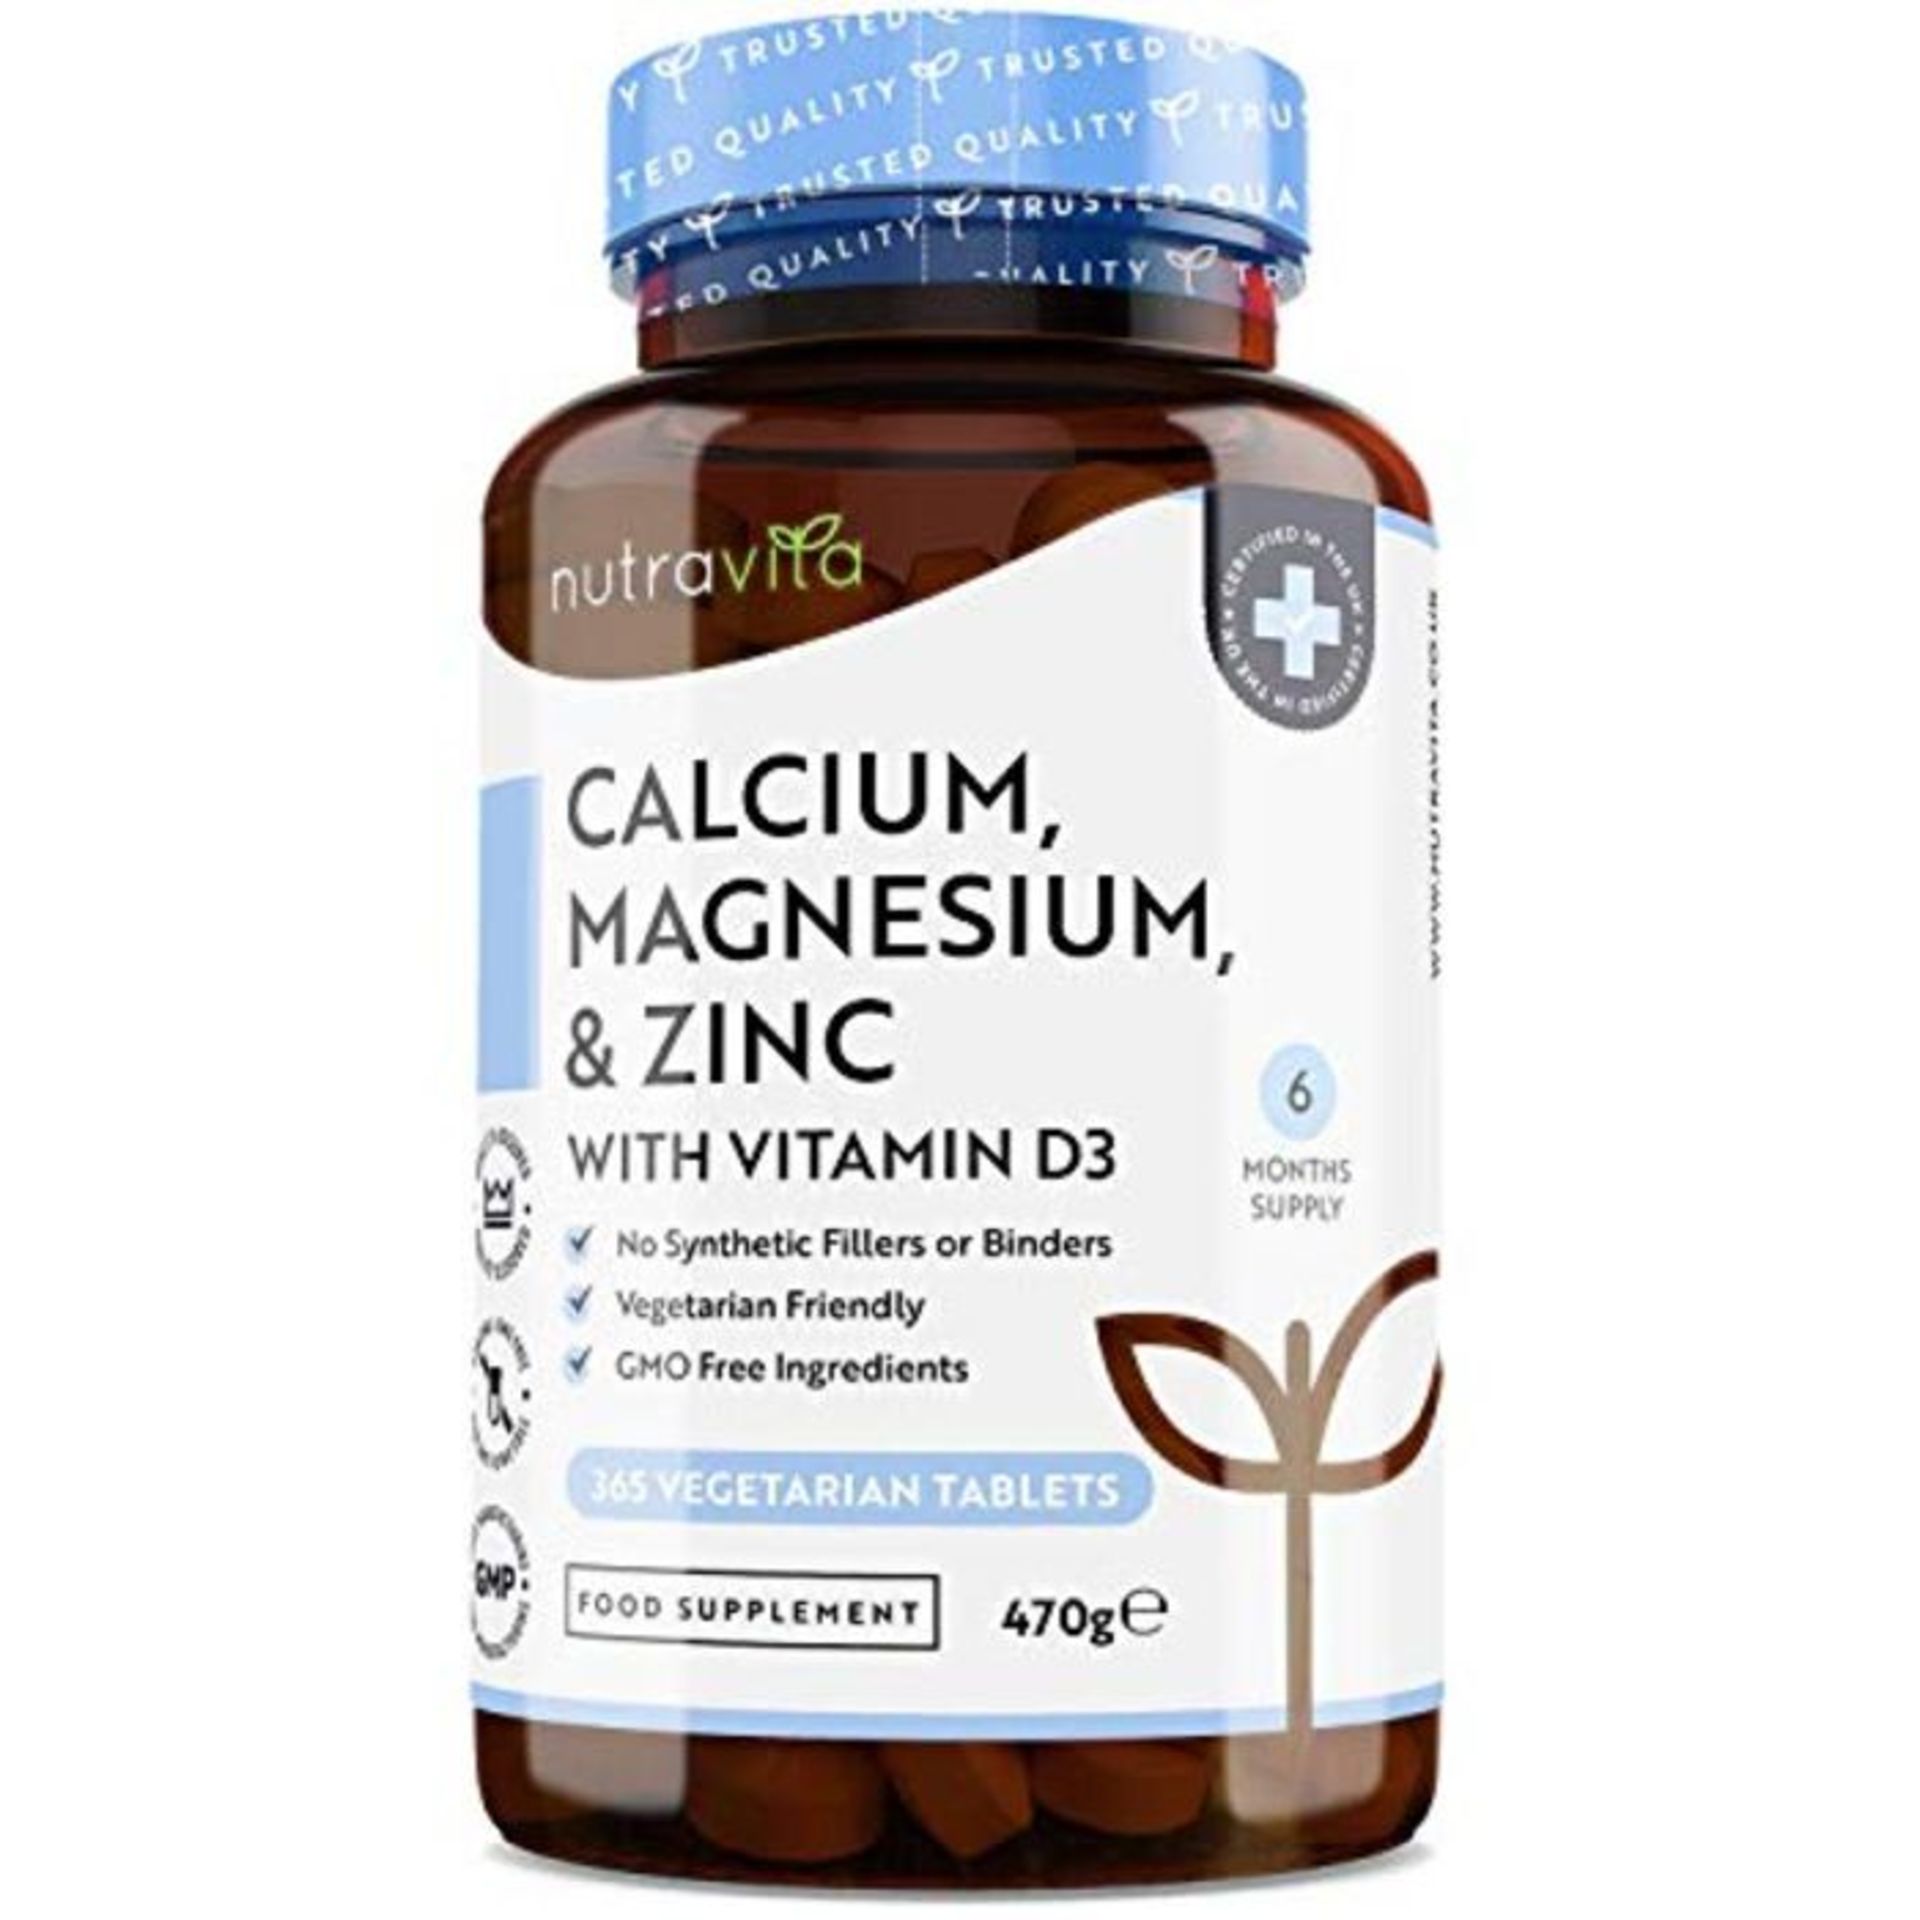 Calcium Magnesium Zinc & Vitamin D3-365 Vegetarian Tablets - High Strength Calcium Sup